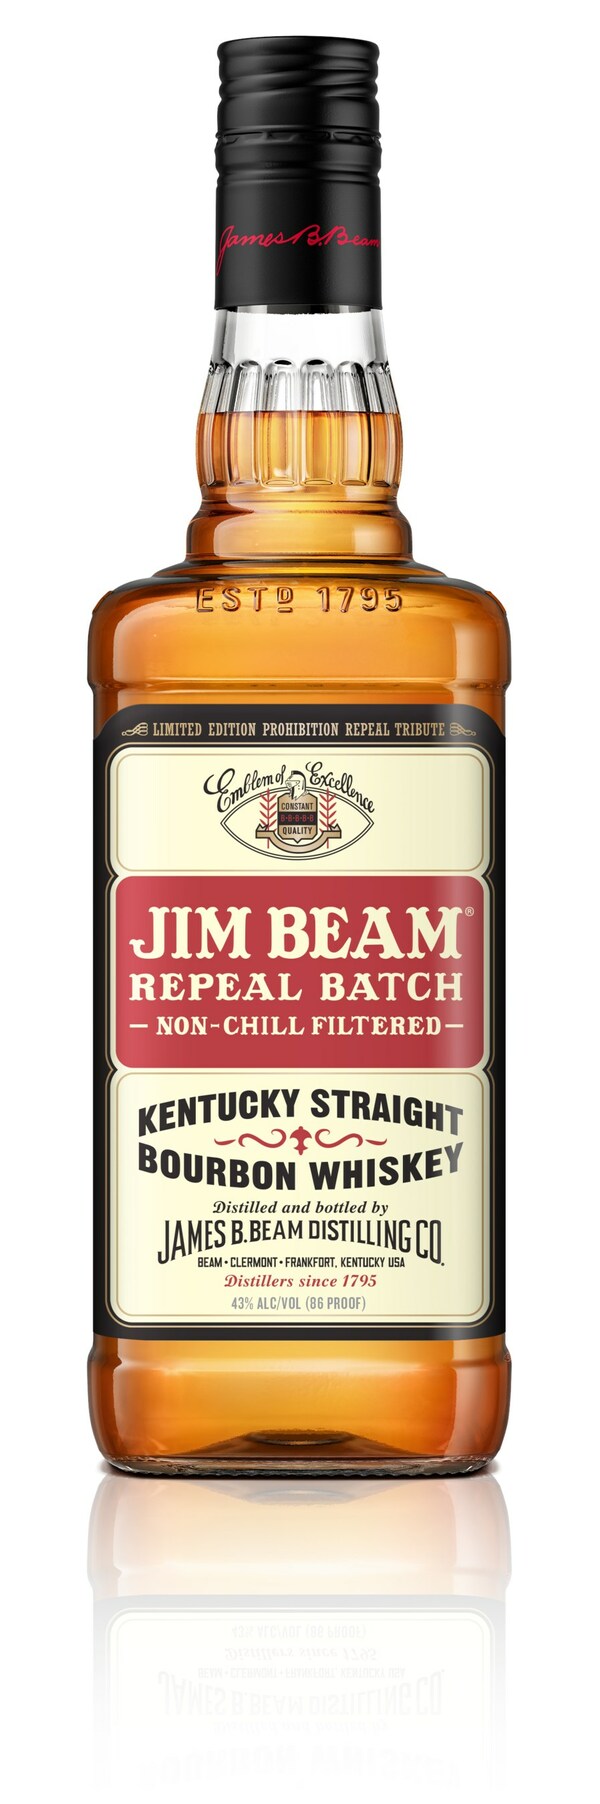 Jim Beam Repeal Batch